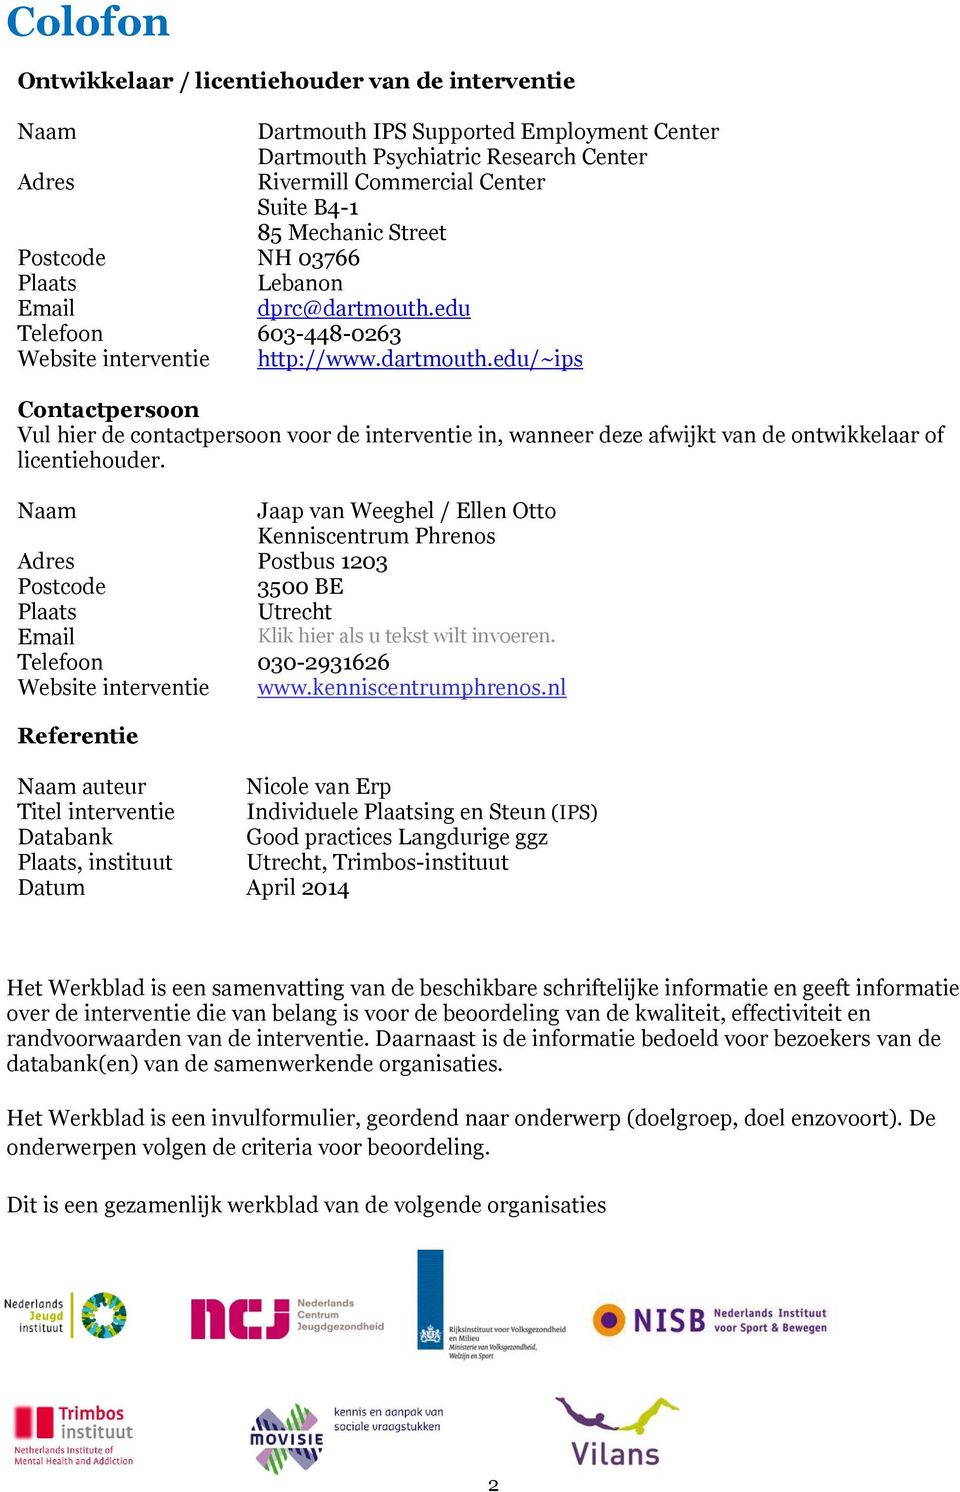 Naam Jaap van Weeghel / Ellen Otto Kenniscentrum Phrenos Adres Postbus 1203 Postcode 3500 BE Plaats Utrecht Email Klik hier als u tekst wilt invoeren. Telefoon 030-2931626 Website interventie www.